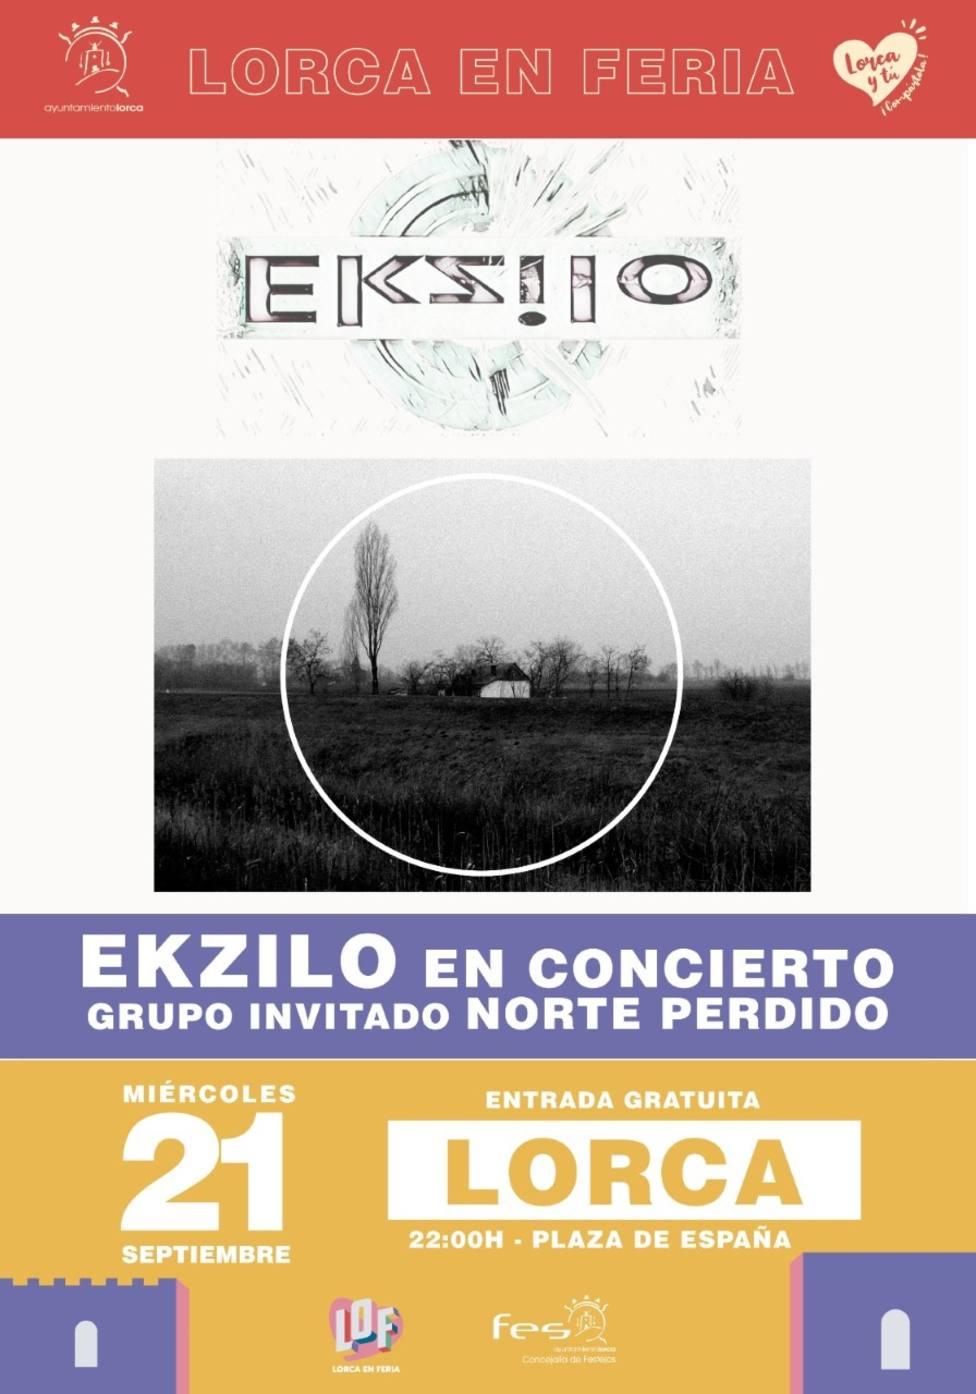 Ezkilo también tocará en la Feria y Fiestas de Lorca